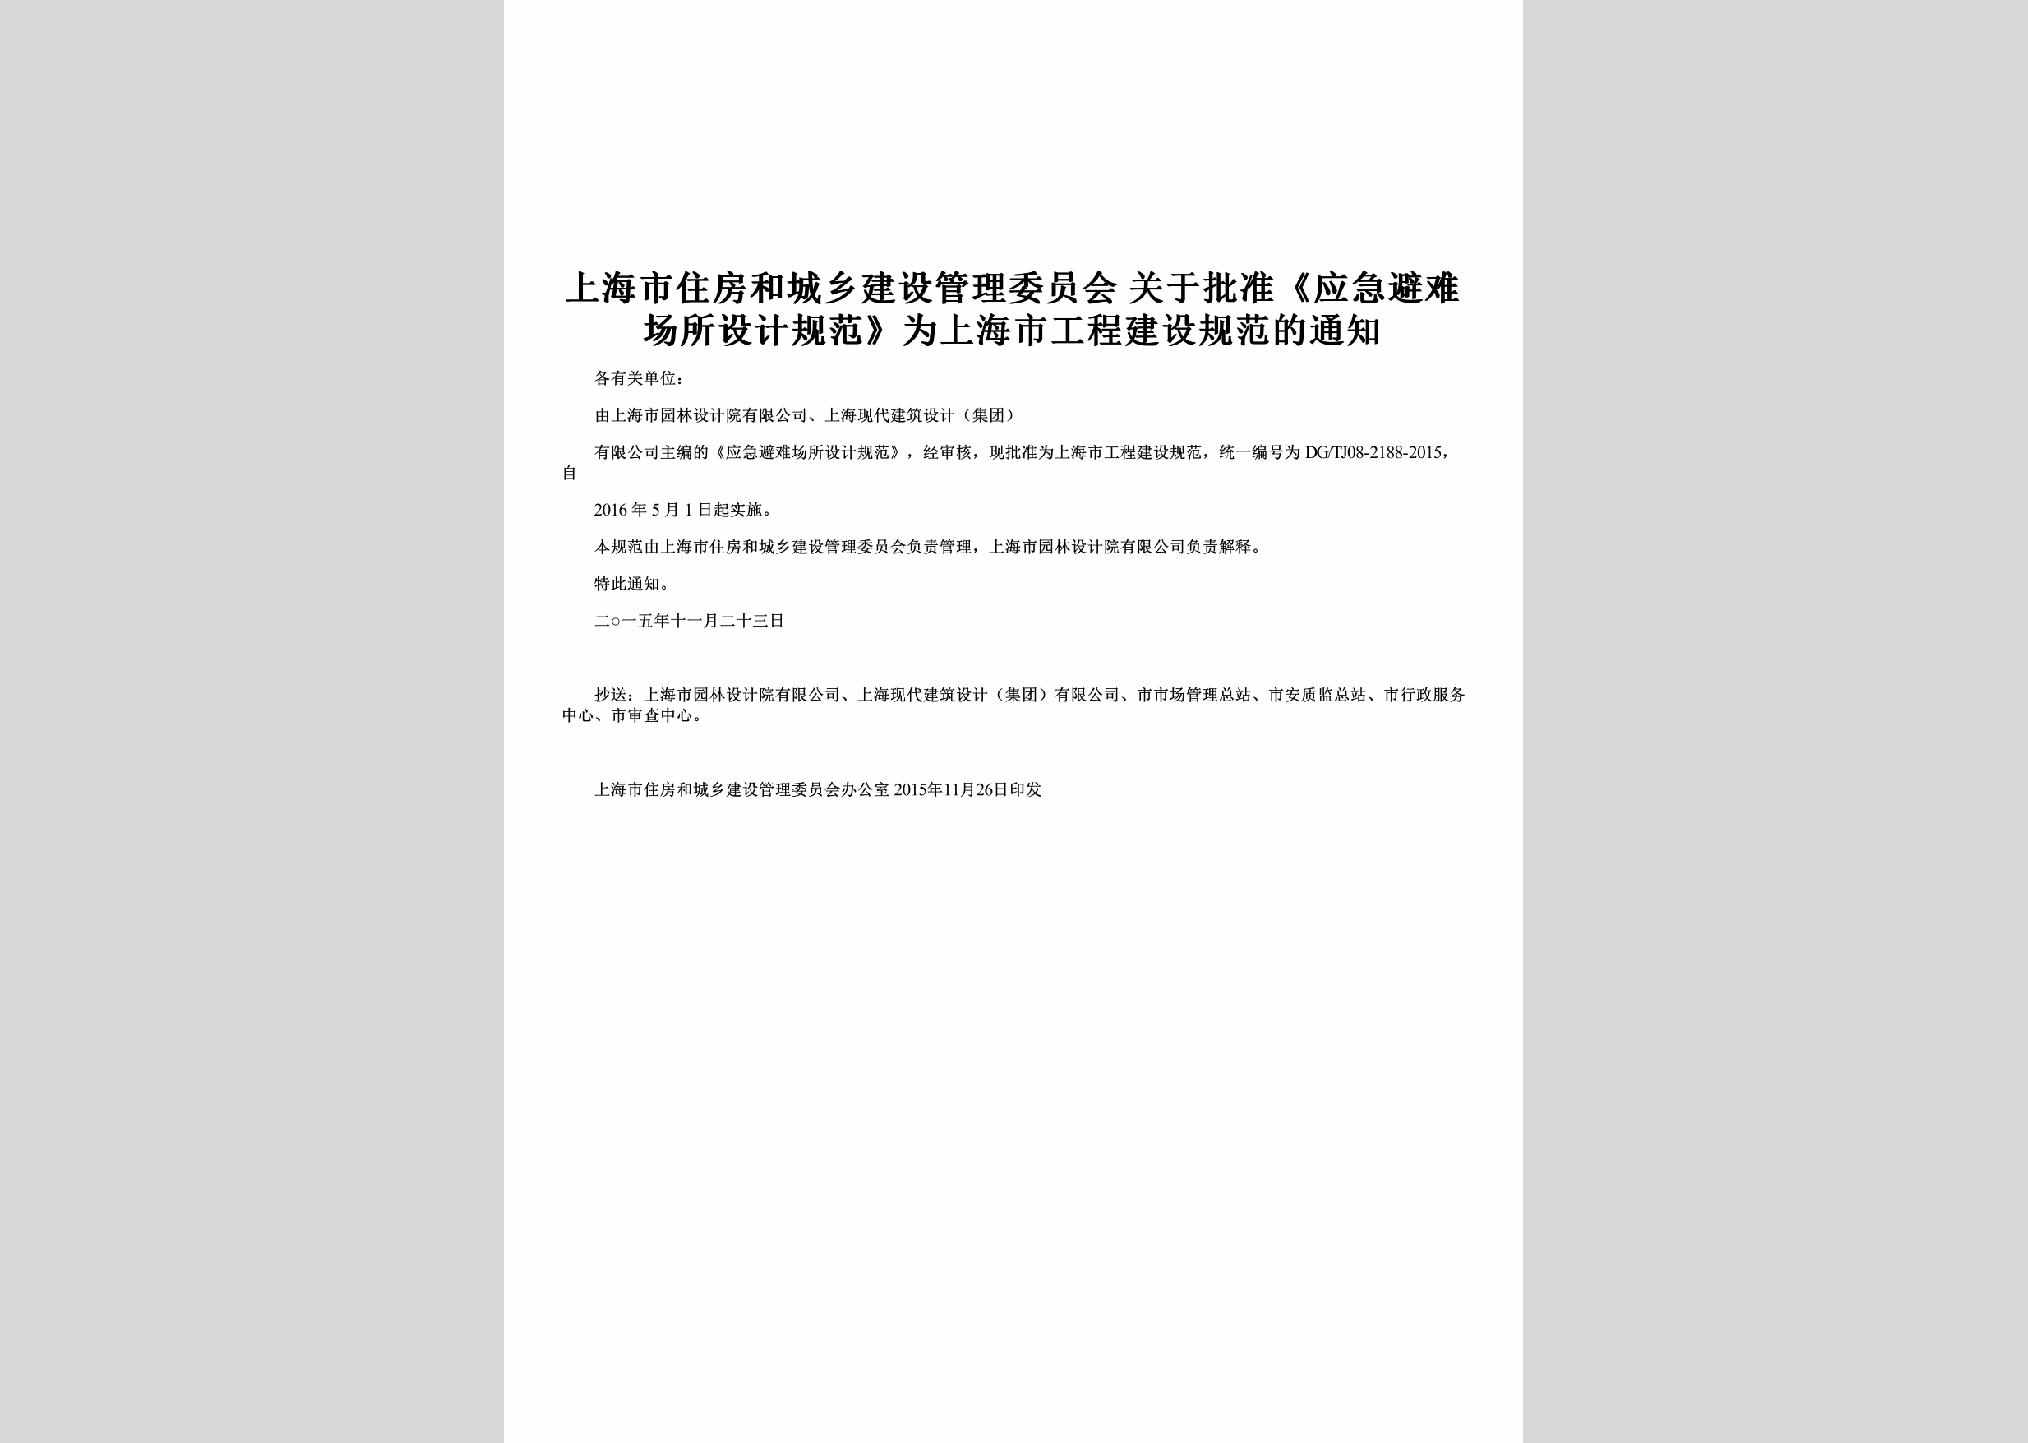 SH-PZSJGFTZ-2016：关于批准《应急避难场所设计规范》为上海市工程建设规范的通知